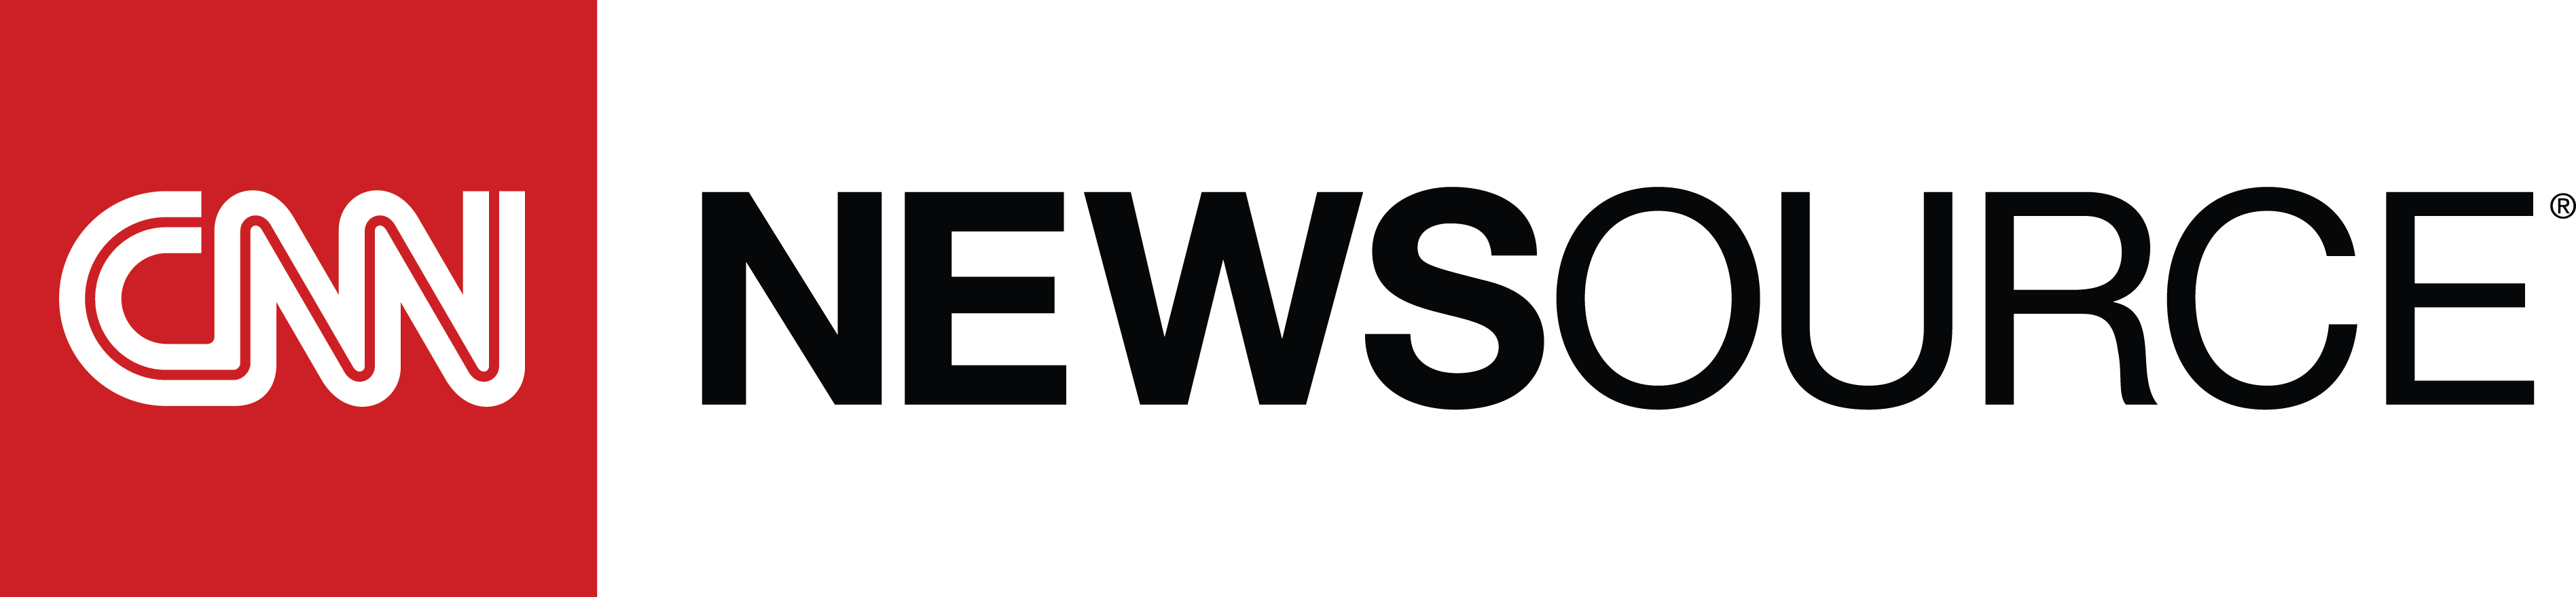 CNN Newsource logo